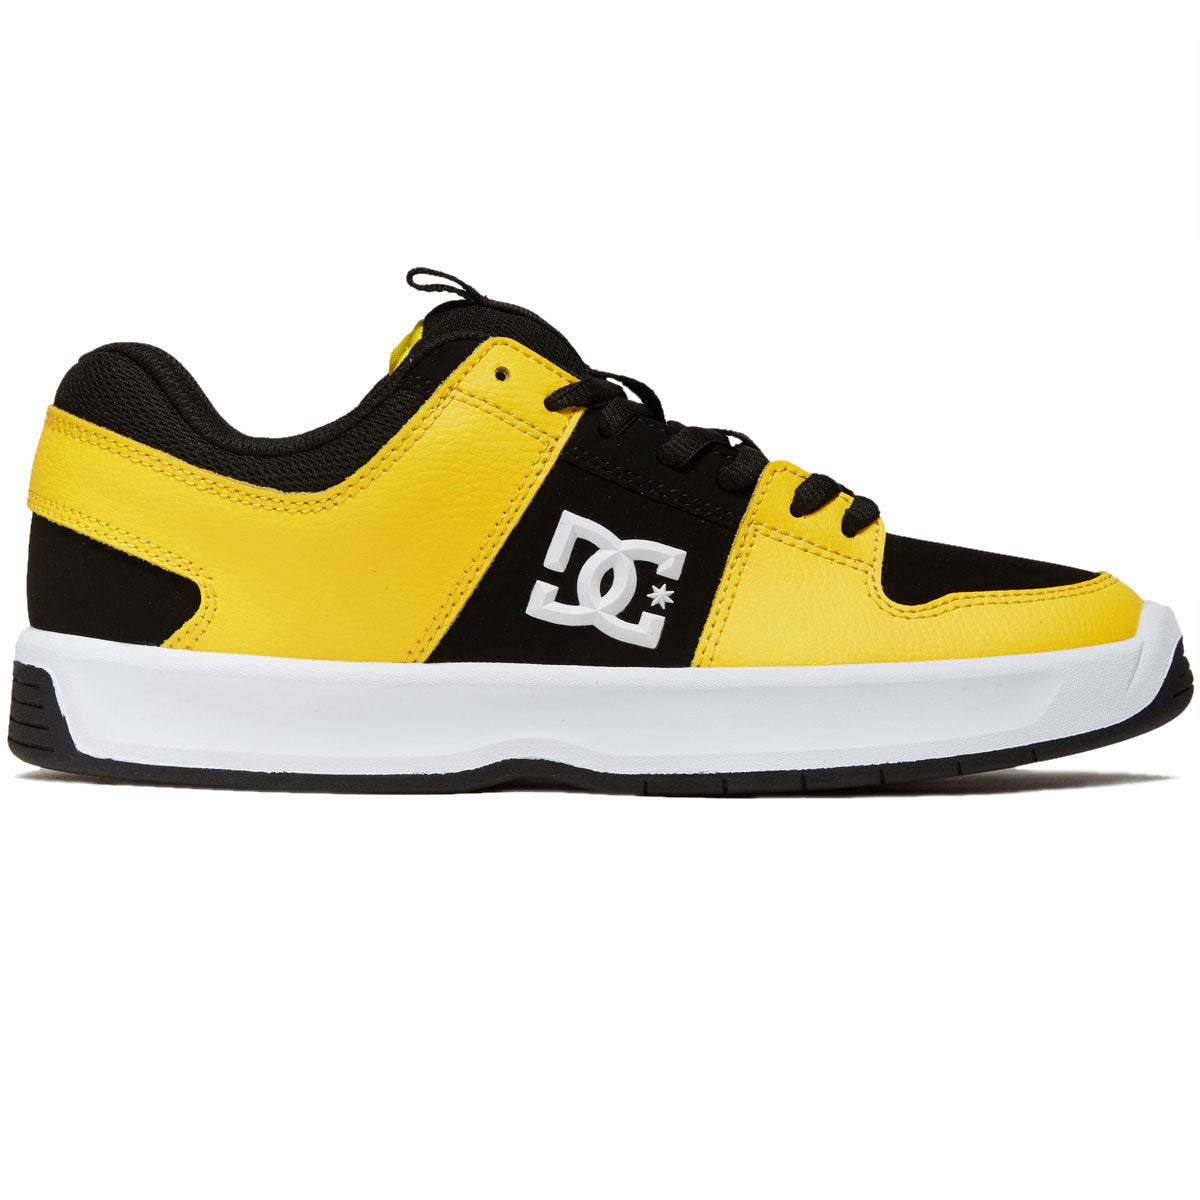 DC Lynx Zero Shoes - White/Black/Yellow image 1